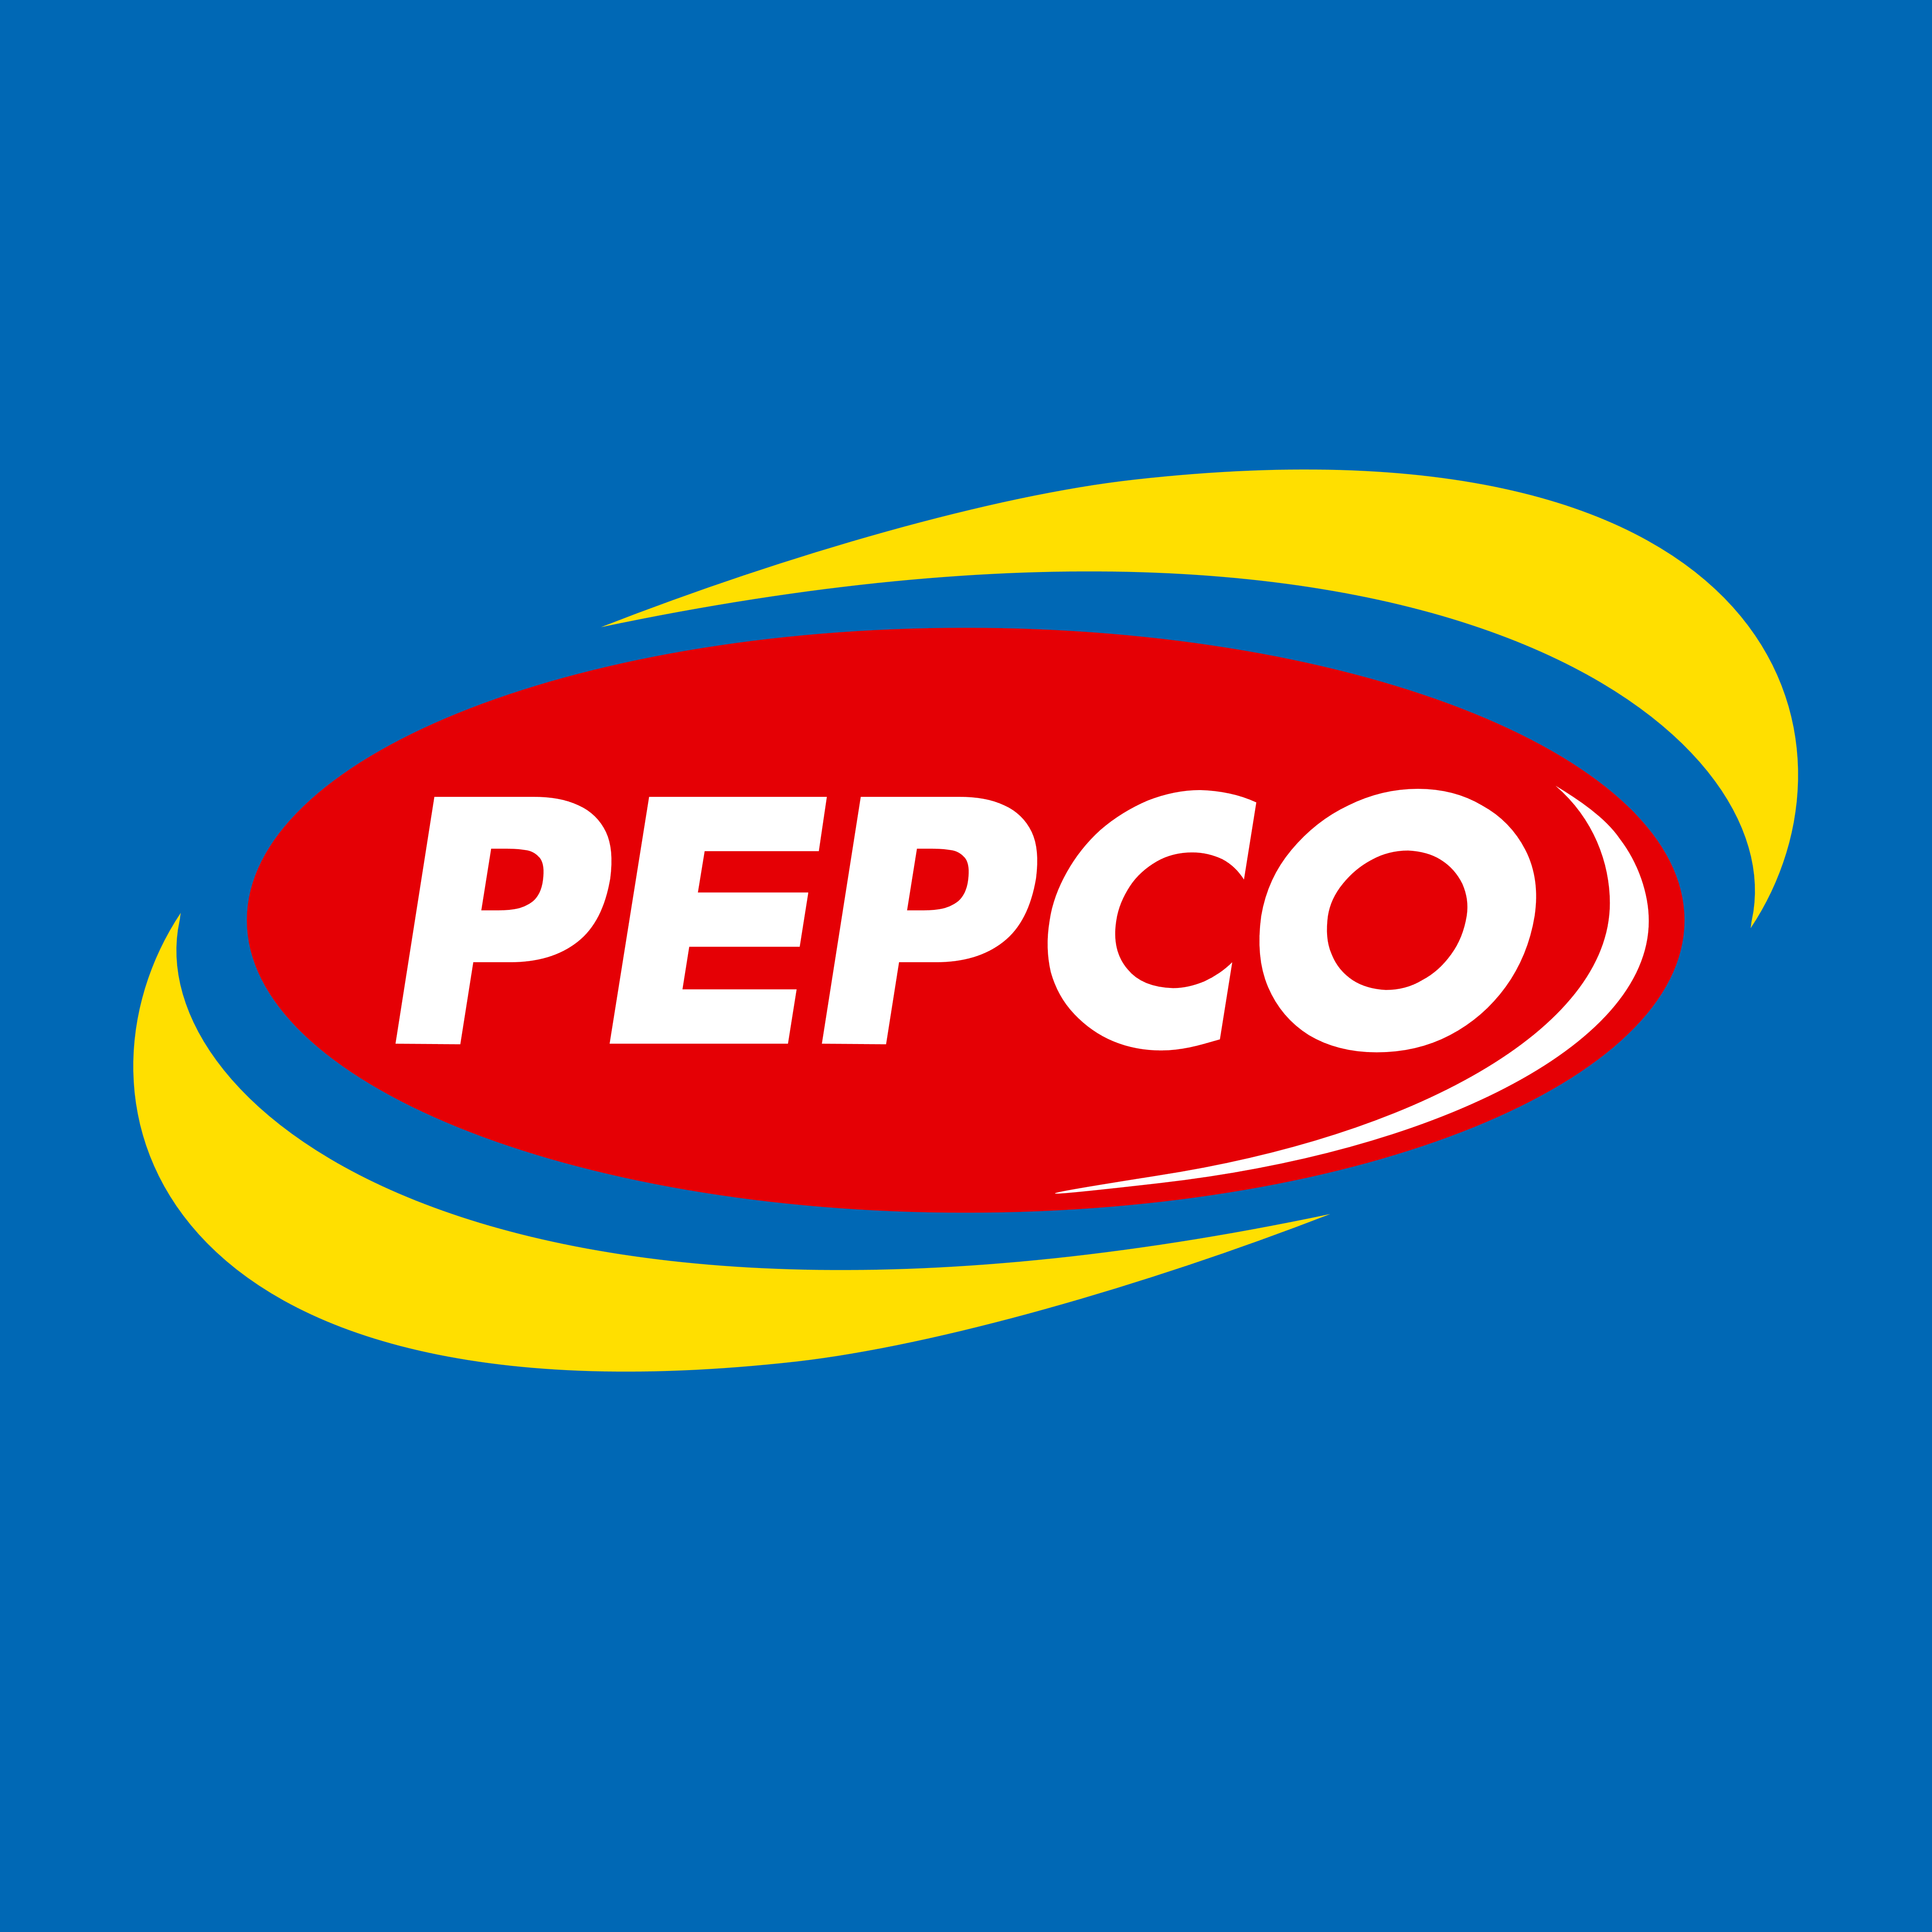 Pepco Logo - Pepco – Logos Download